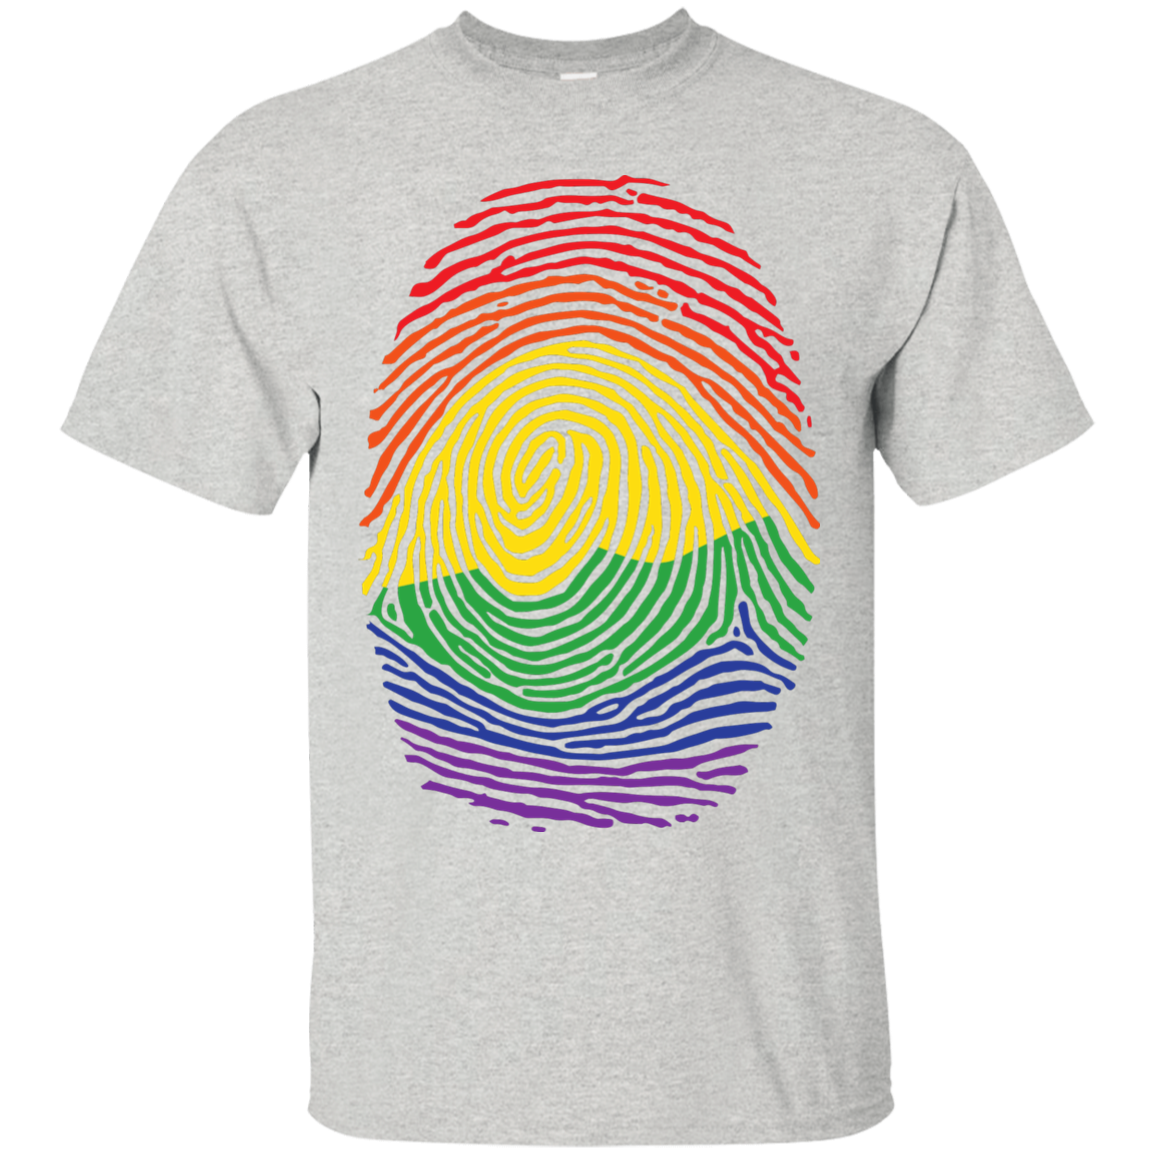 Gay Pride Thumb Print round neck Shirt Rainbow Thumb print men's tshirt